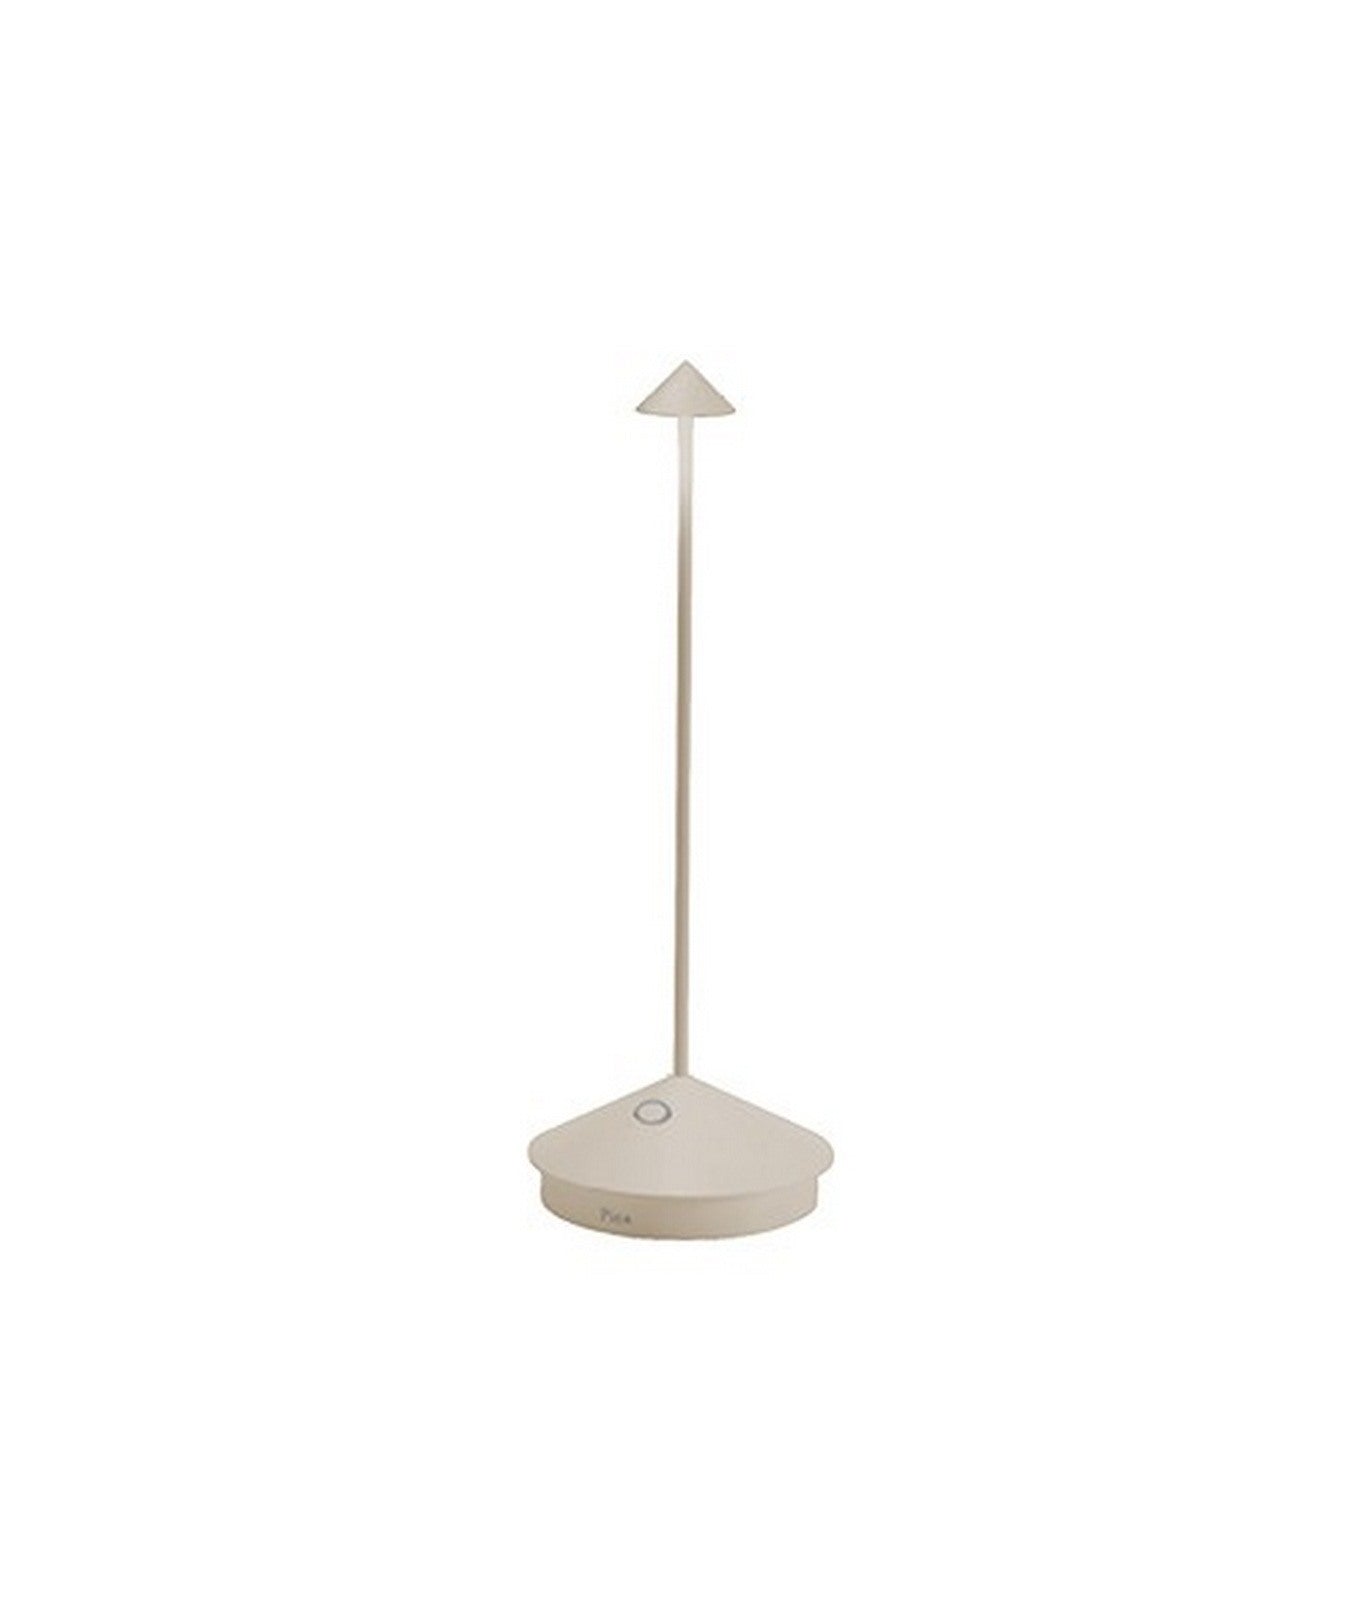 immagine-1-zafferano-pina-pro-sabbia-lampada-da-tavolo-a-led-h29cm